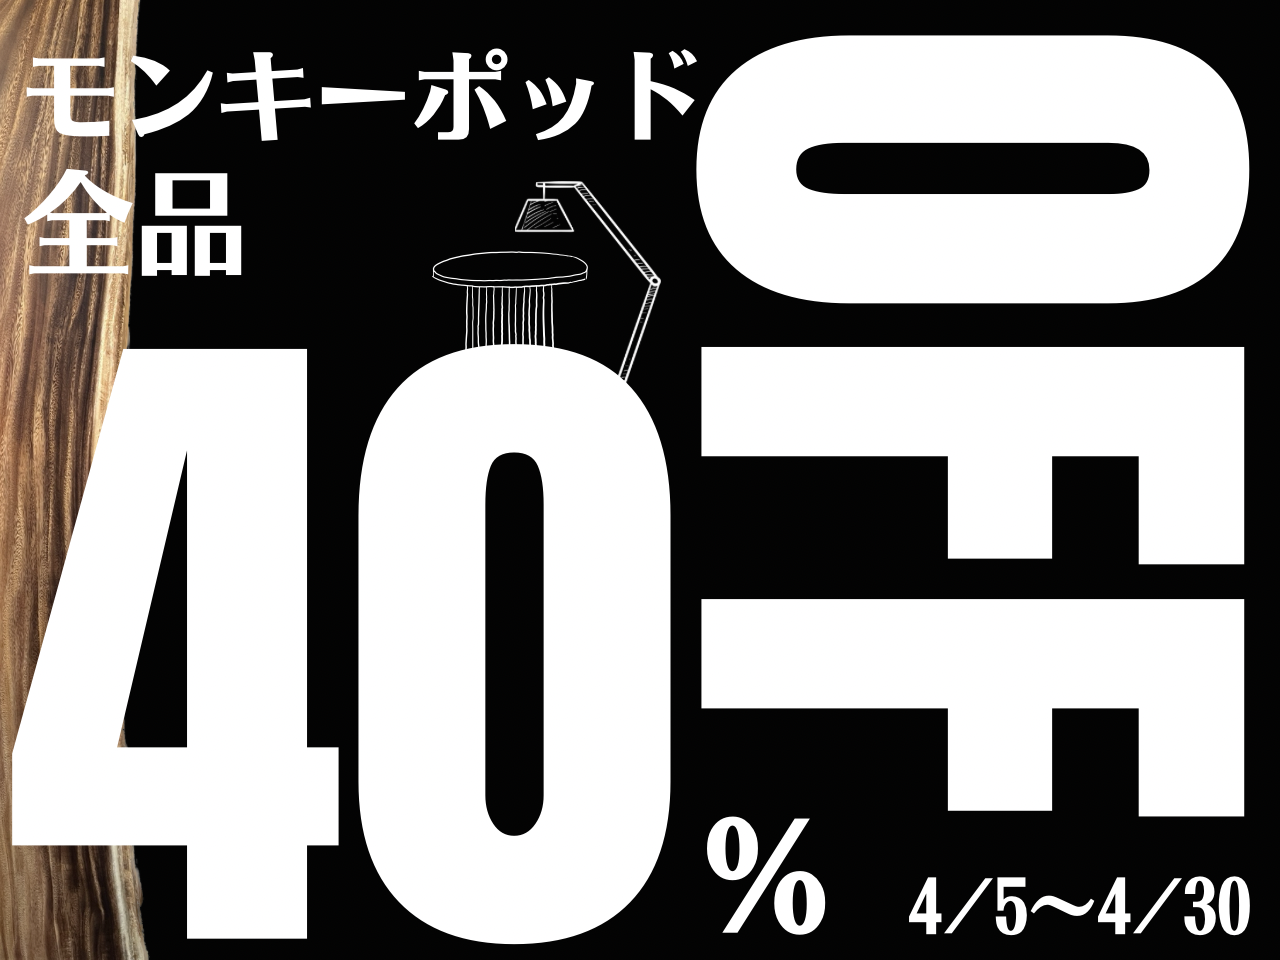 【NEW】"春トクSALE"開催致します！モンキーポッド40%OFF!  4/5~4/30